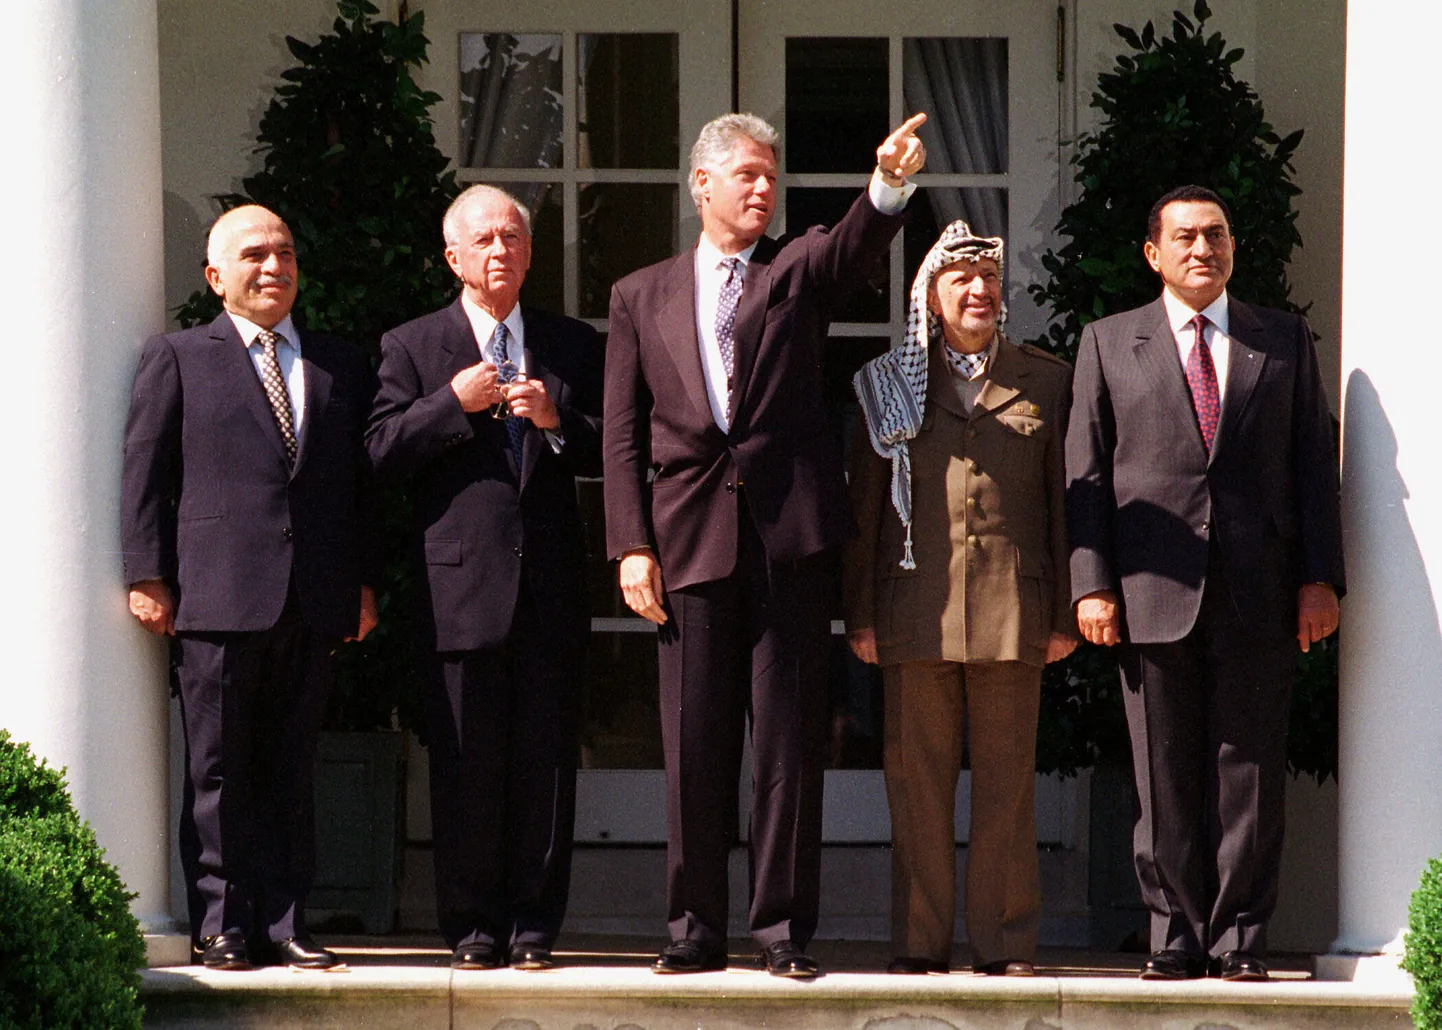 Üks lootusrikas Iisraeli-Palestiina konflikti lahendamise hetki oli Oslo rahulepingu sõlmimine USA presidendi Bill Clintoni vahendusel 28. septembril 1995. Pildil (vasakult) Jordaania kuningas Hussein, Iisraeli peaminister Yitzhak Rabin, USA president Bill Clinton, Palestiina omavalitsuse juht Yasser Arafat ja Egiptuse president Hosni Mubarak. Ning mõelgem nüüd korraks, mis on nendest meestest saanud.